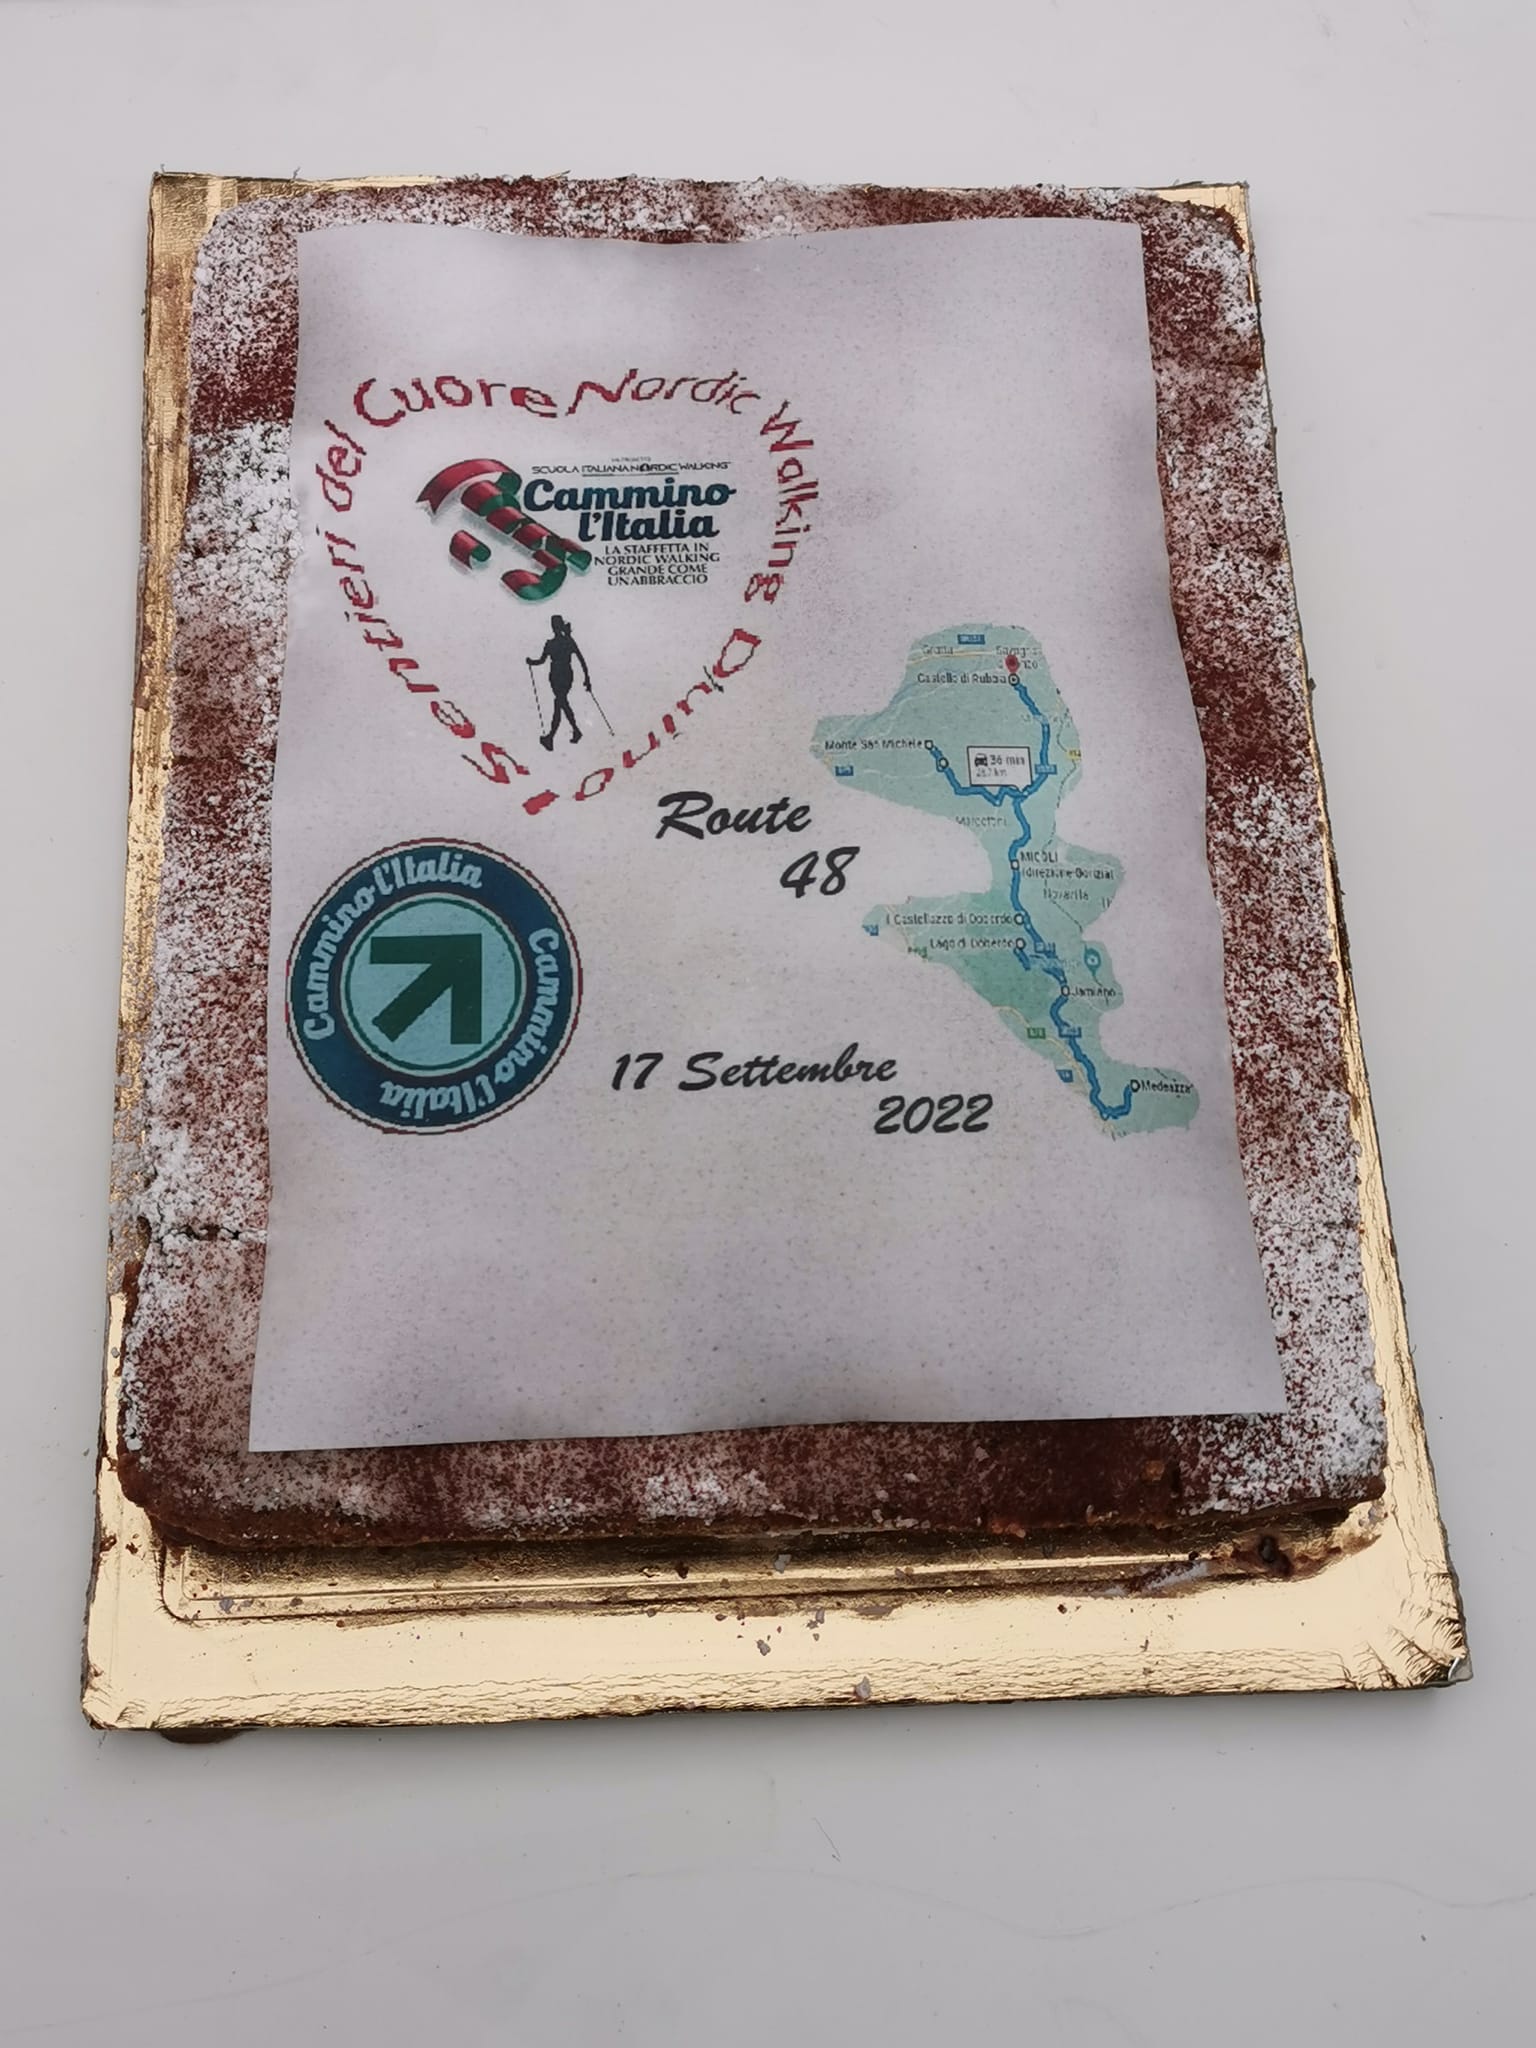 2022-09-24 La torta di Carmine per il CAMMINO L'ITALIA ROUTE 48 Medeazza-Rubbia